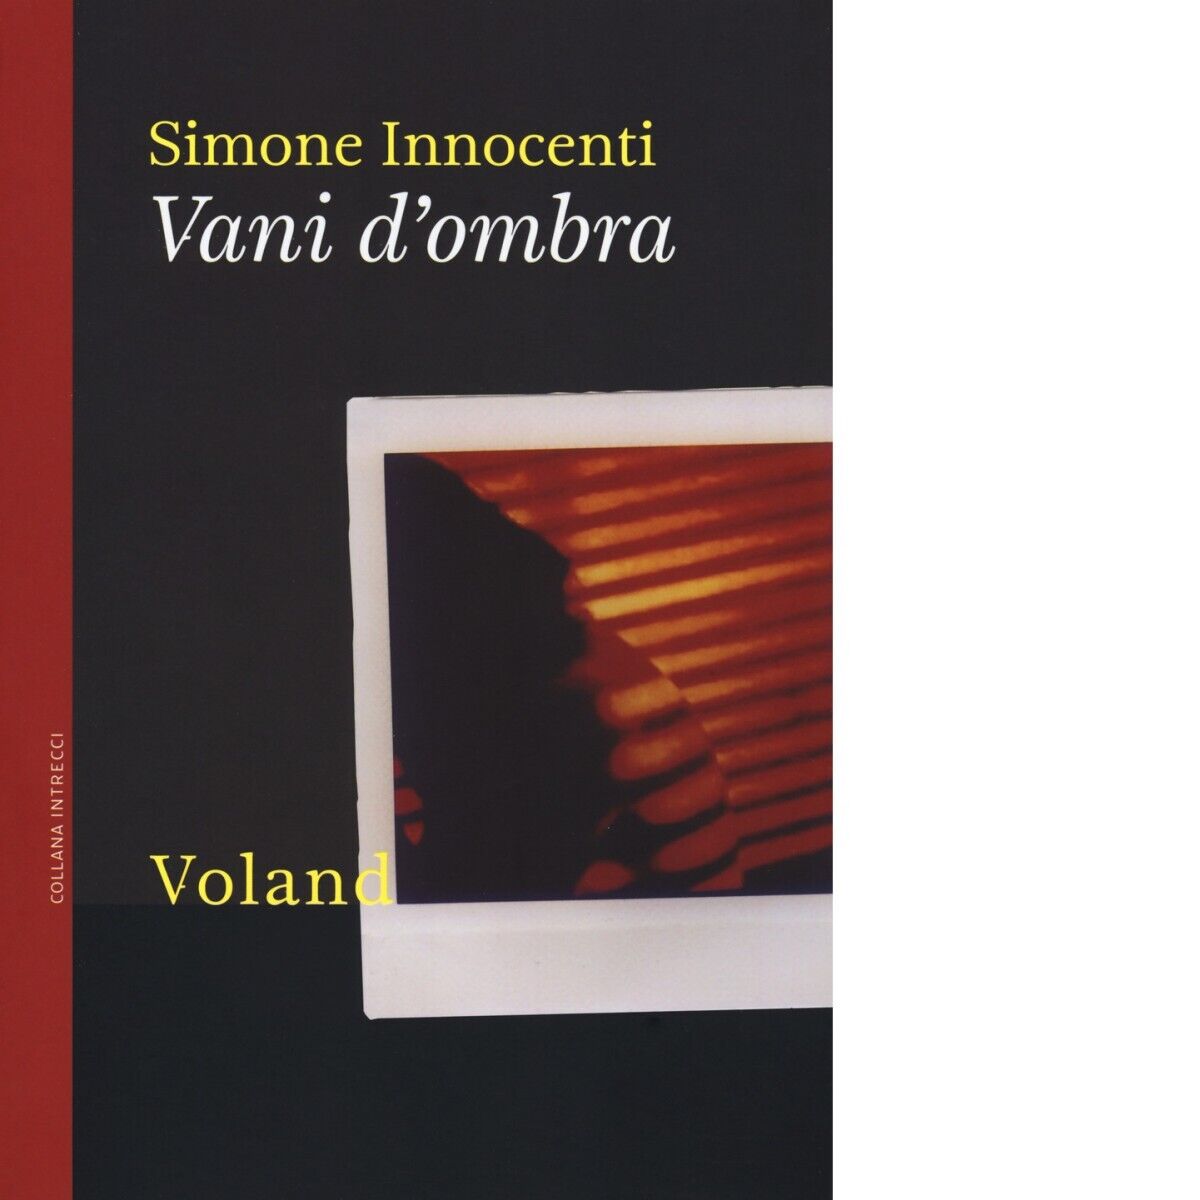  Vani d'ombra di Simone Innocenti, 2019, Voland